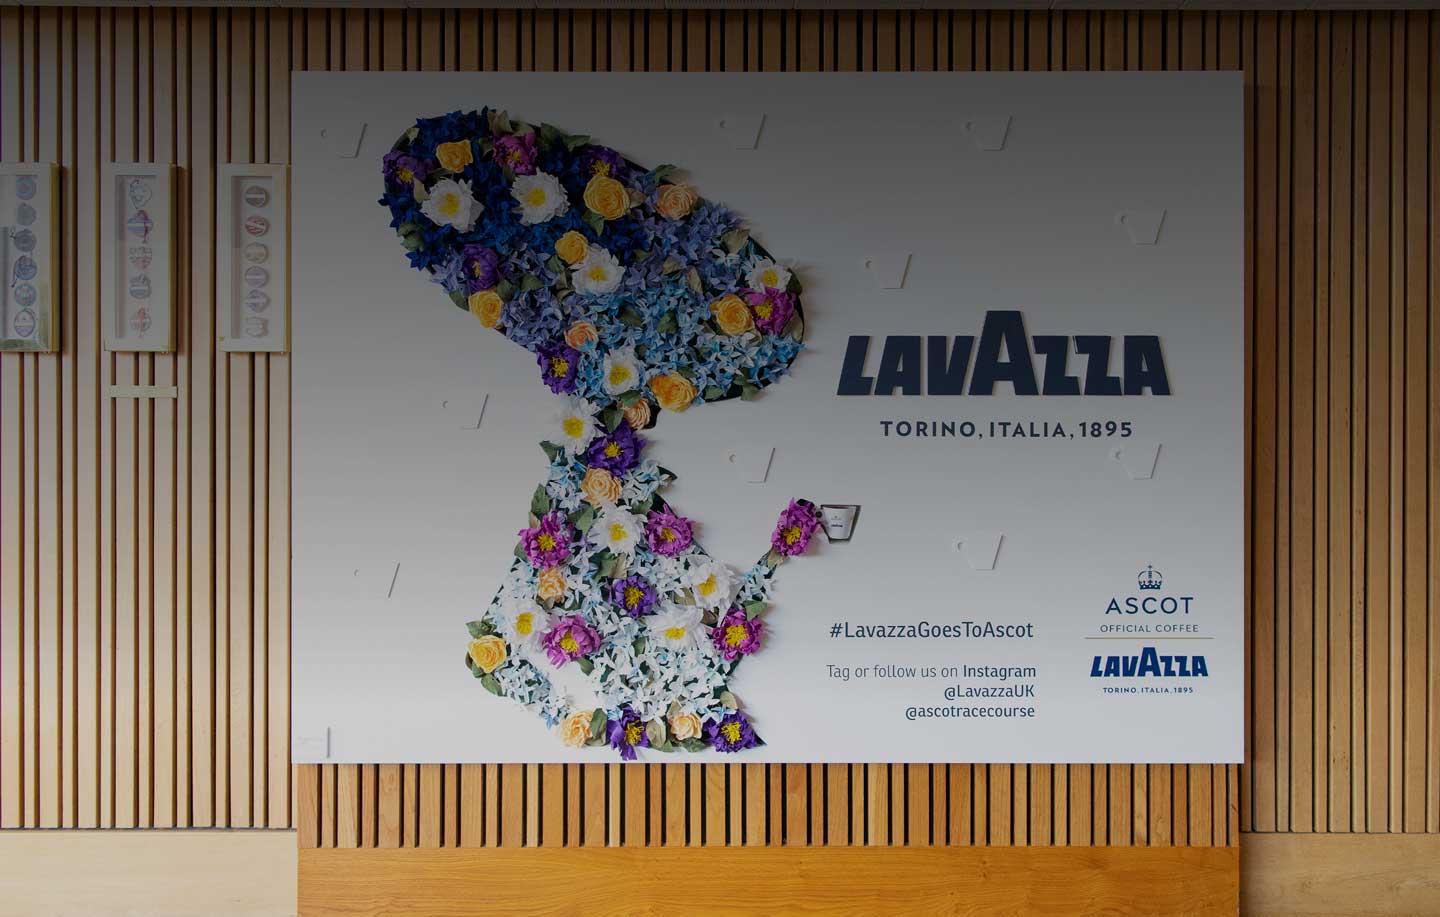 Royal Ascot und Lavazza: Teilen gemeinsamer Werte